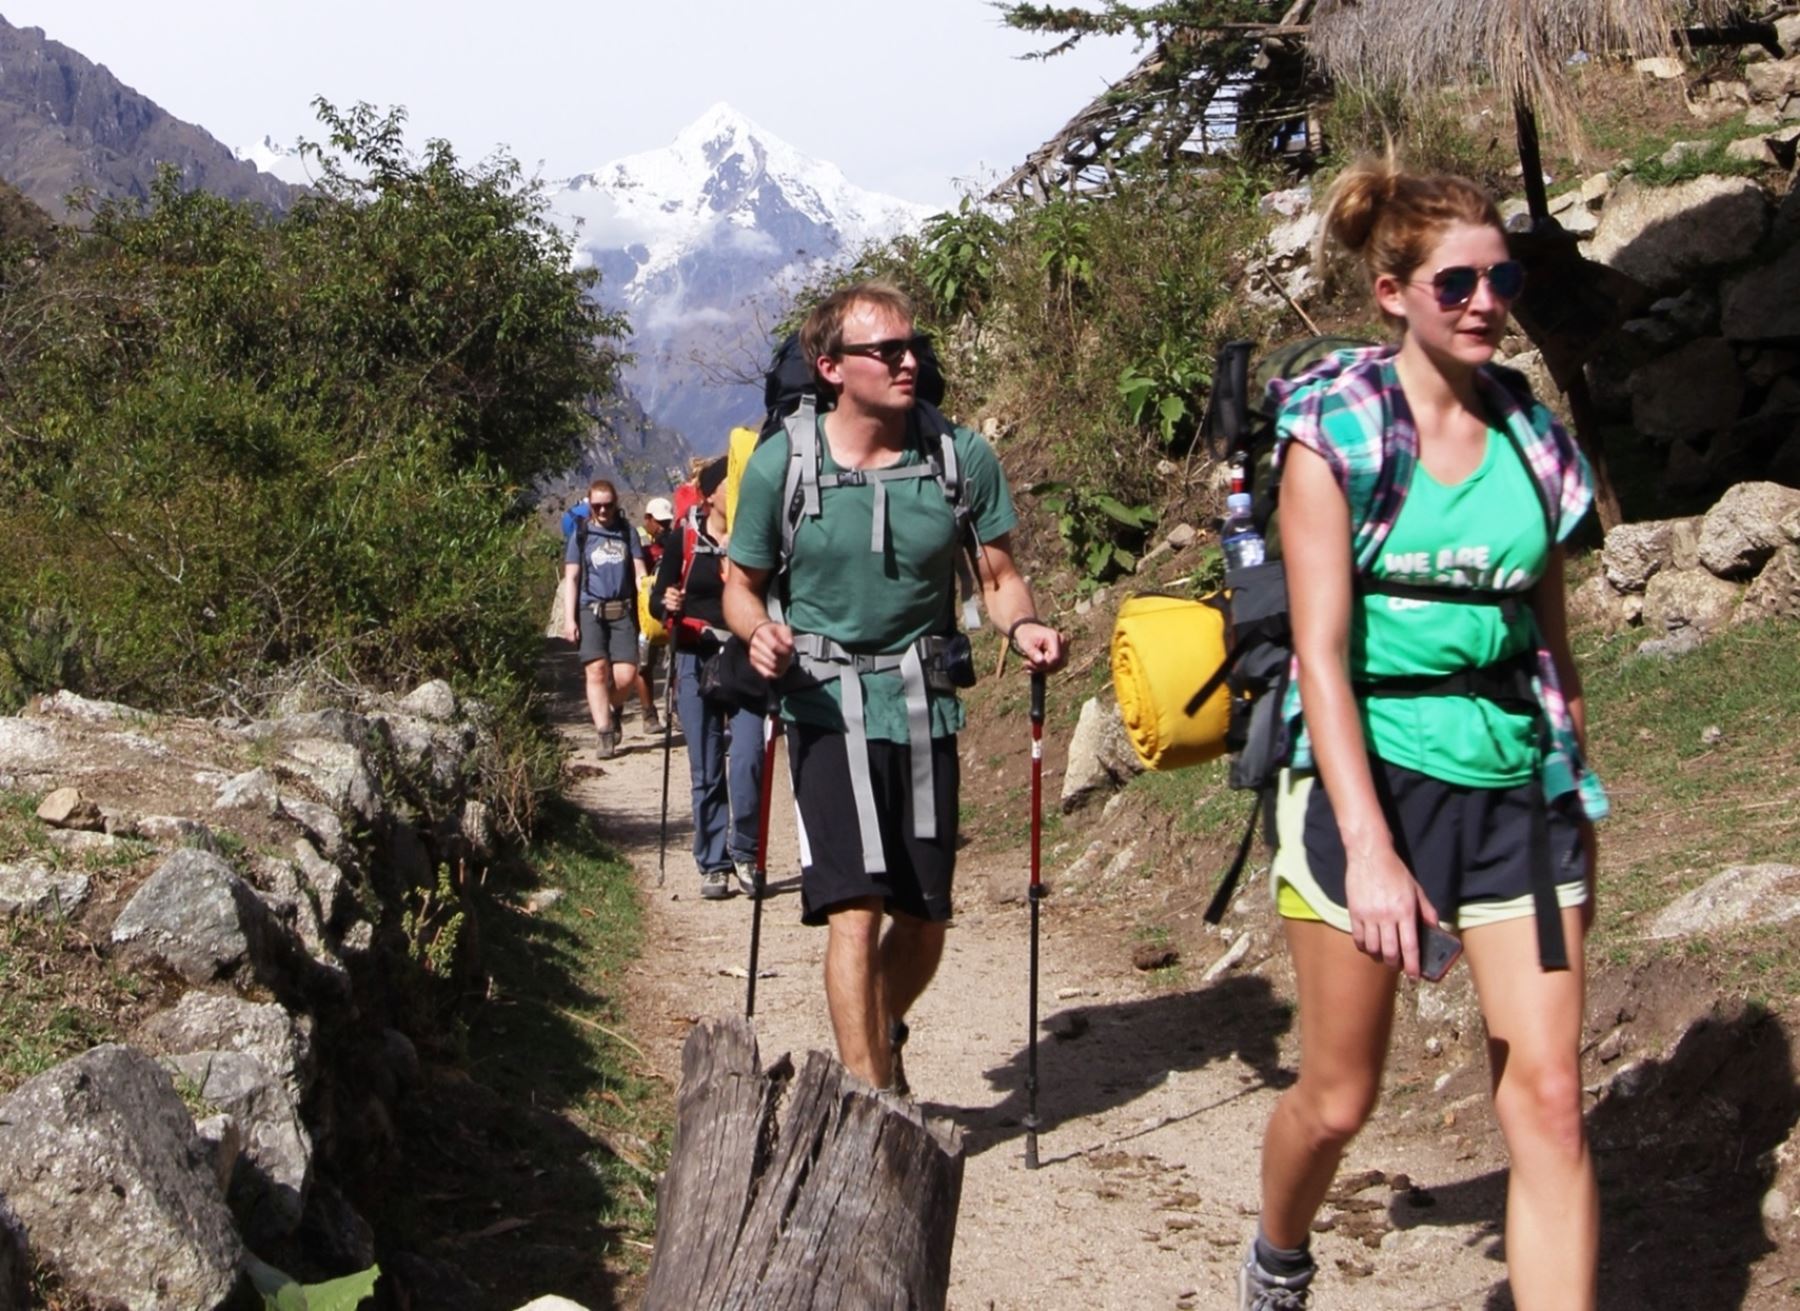 Cerca de 1,000 turistas extranjeros y nacionales fueron los primeros en disfrutar de los atractivos que posee la Red de Caminos Inca a Machu Picchu en la primera semana tras la reapertura de la ruta el 1 de marzo.